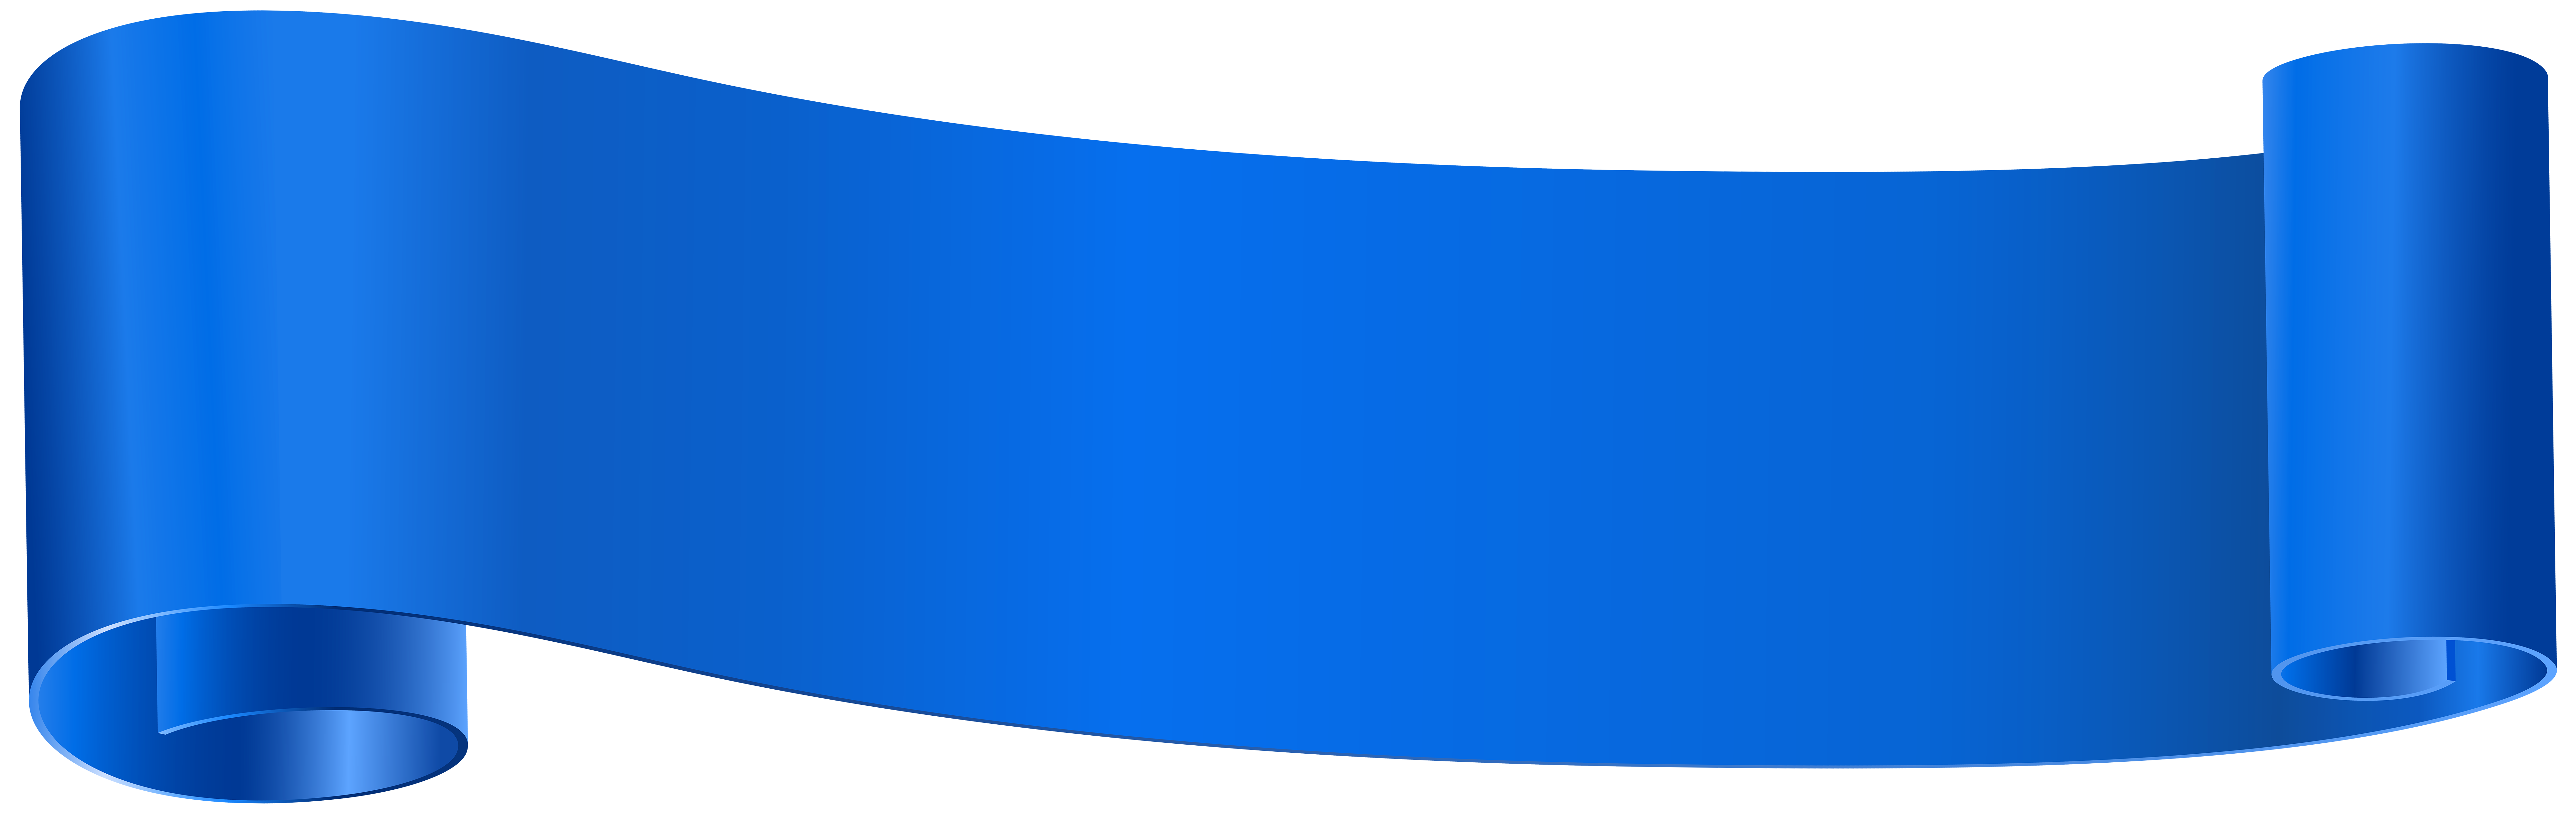 Blue Banner Clip Art PNG Image